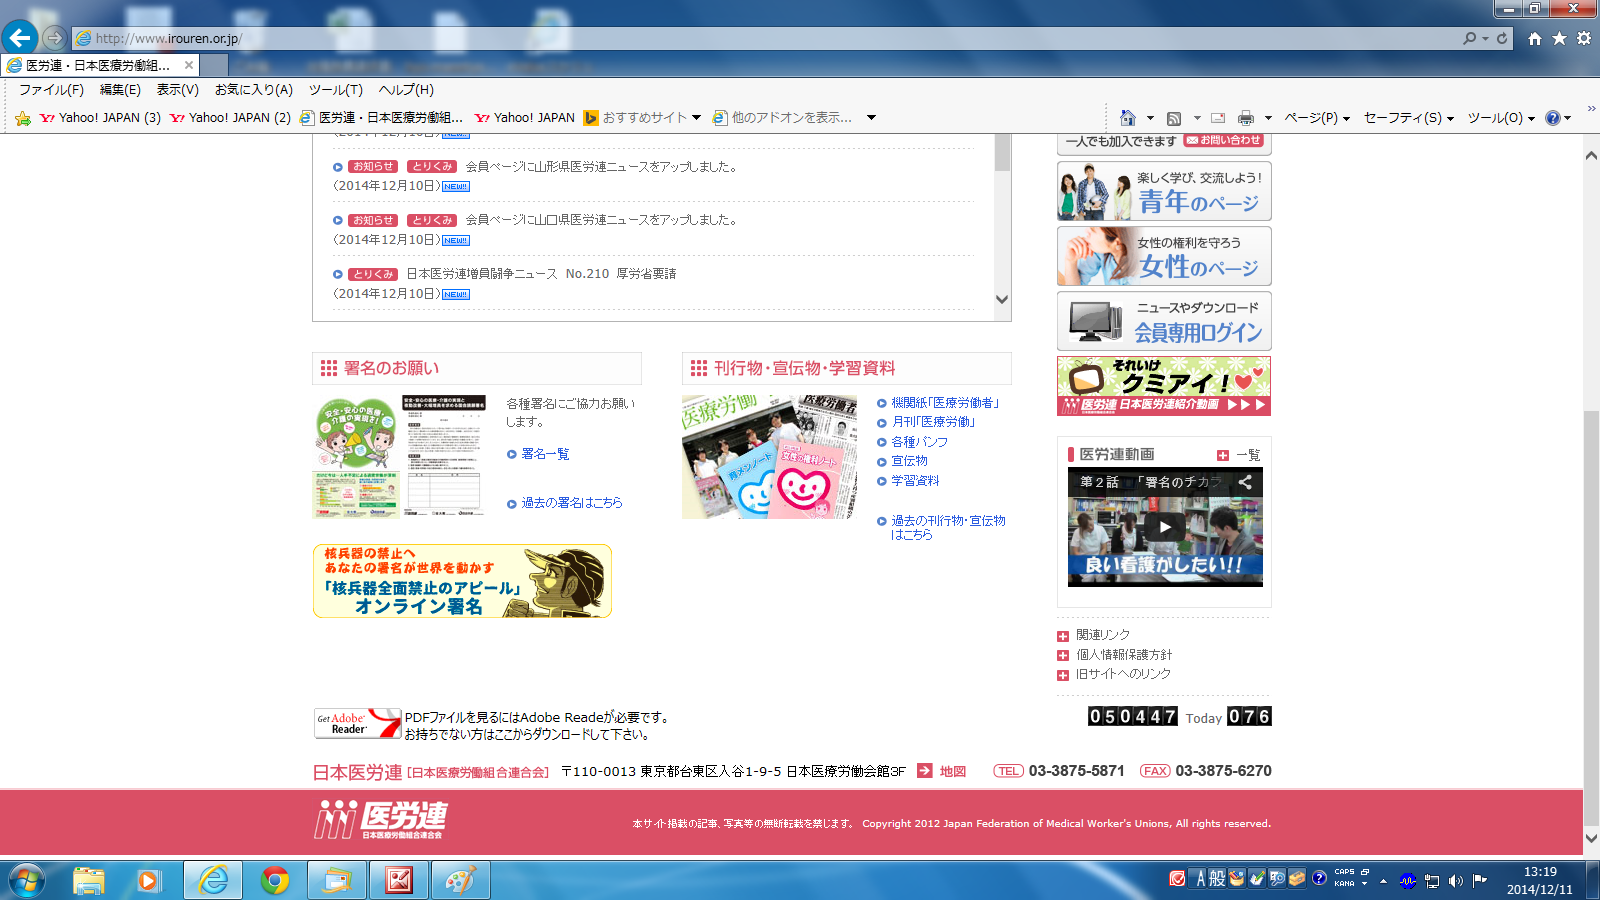 http://irouren.or.jp/news/toppupe-ji.png